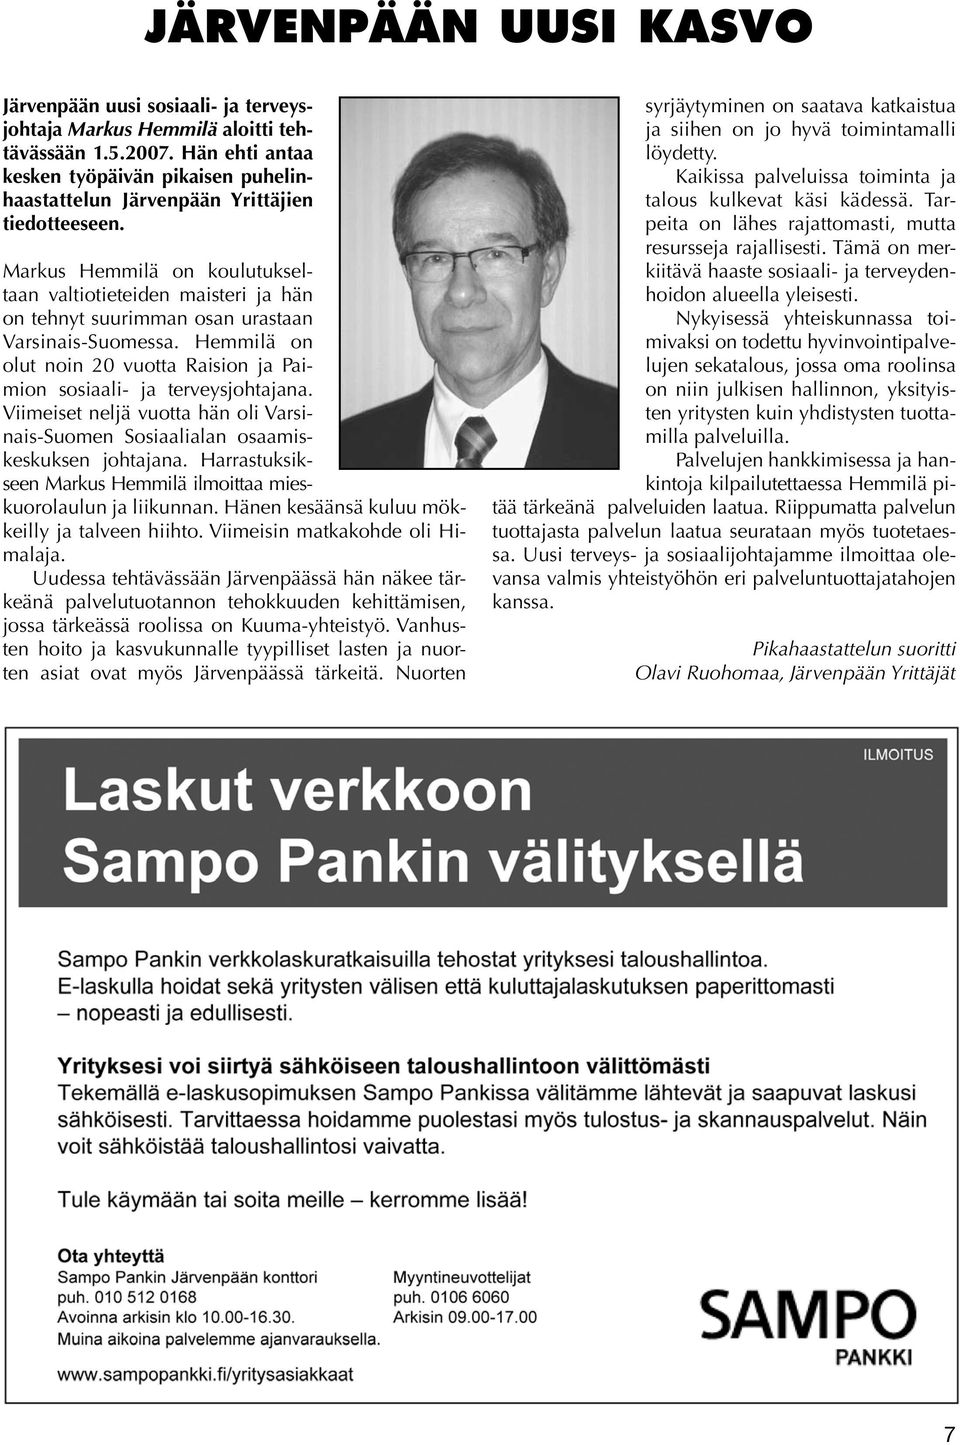 Markus Hemmilä on koulutukseltaan valtiotieteiden maisteri ja hän on tehnyt suurimman osan urastaan Varsinais-Suomessa. Hemmilä on olut noin 20 vuotta Raision ja Paimion sosiaali- ja terveysjohtajana.